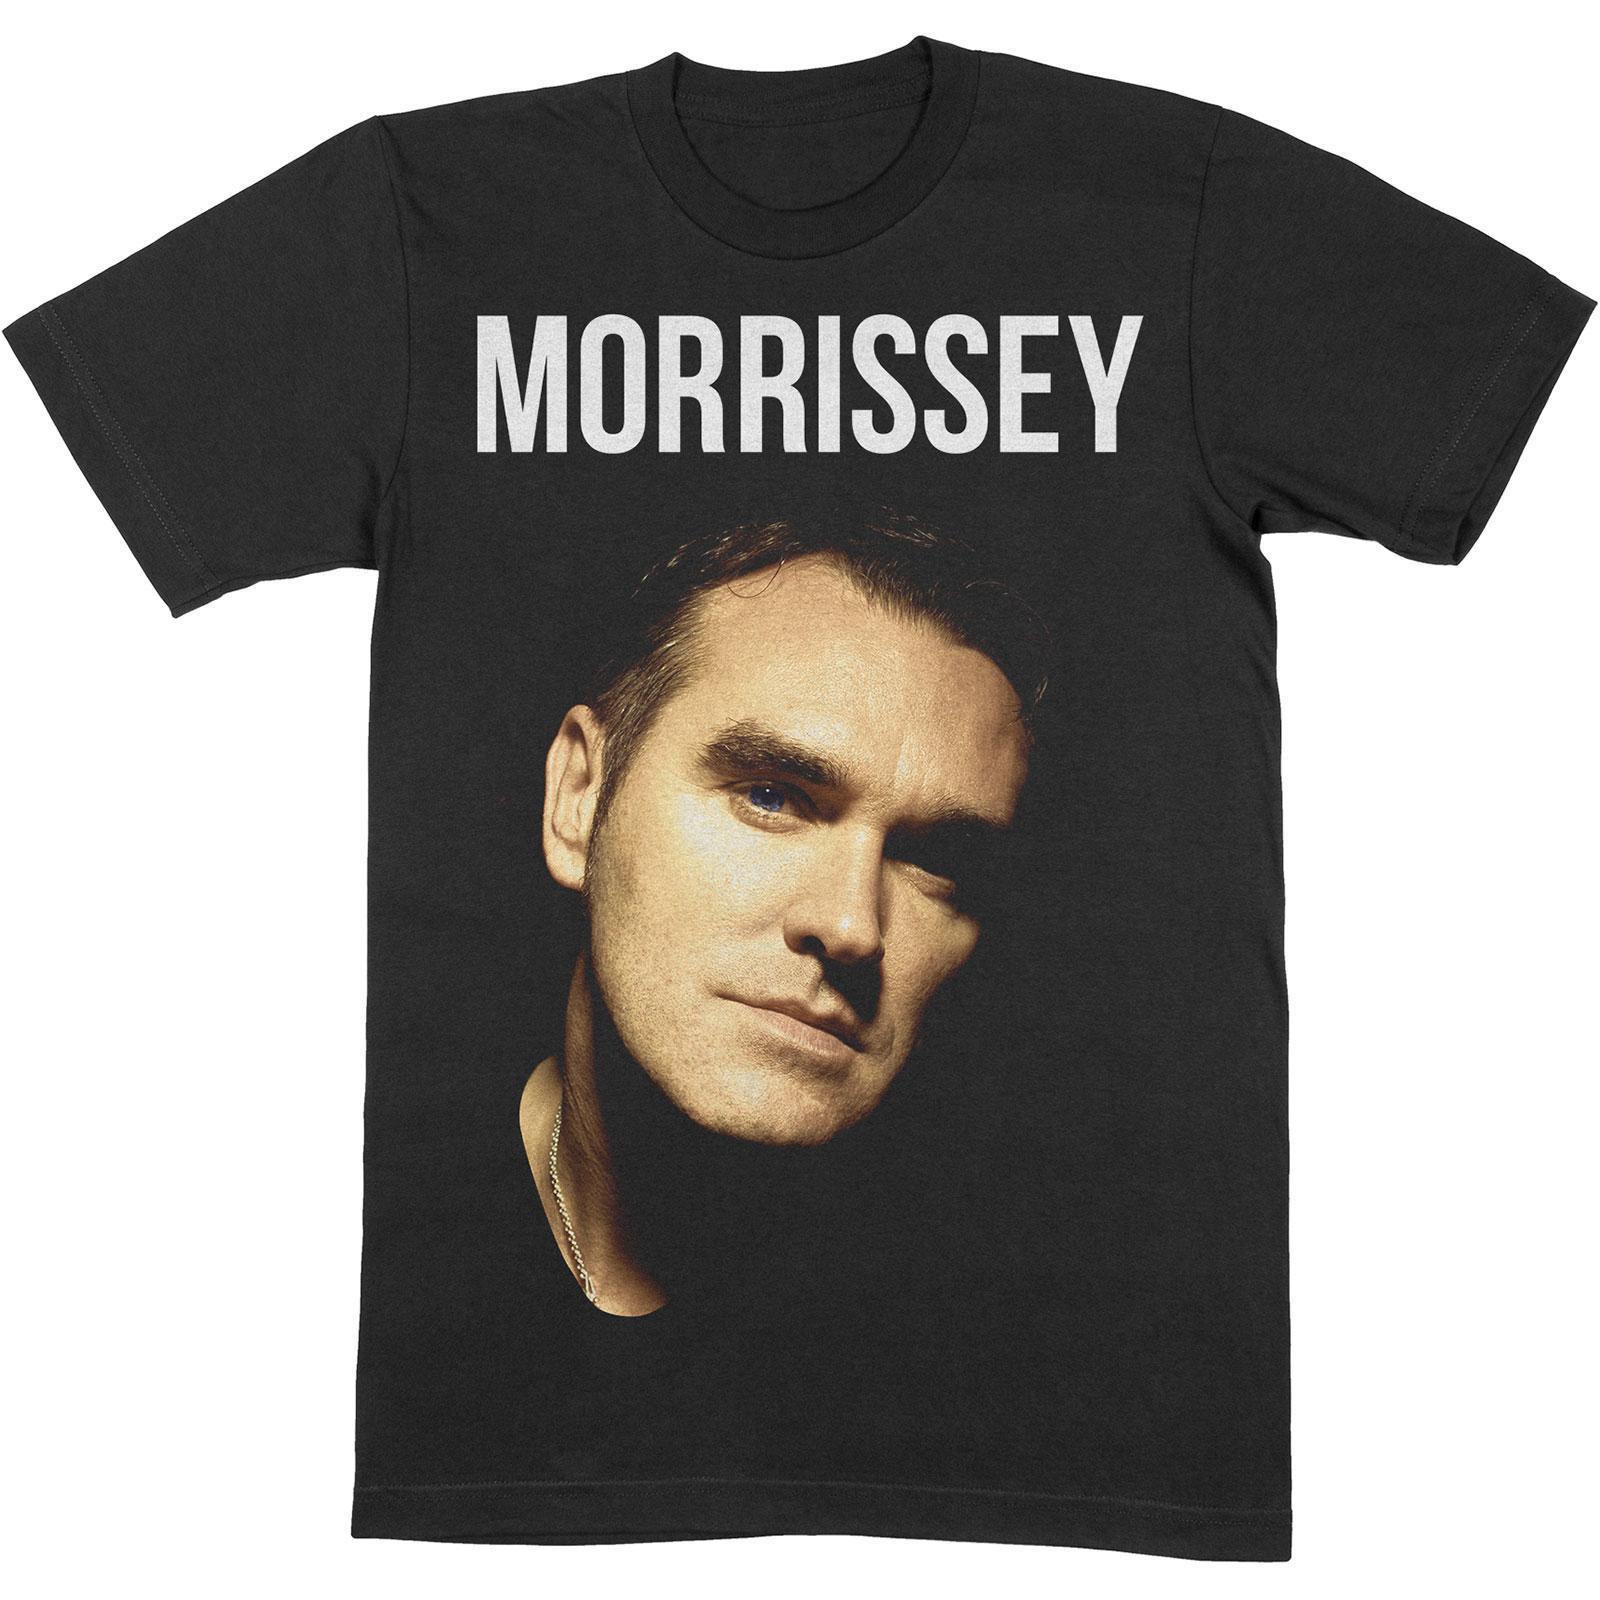 Morrissey Unisex Adult Photograph Cotton T-Shirt (Black) (XXL)